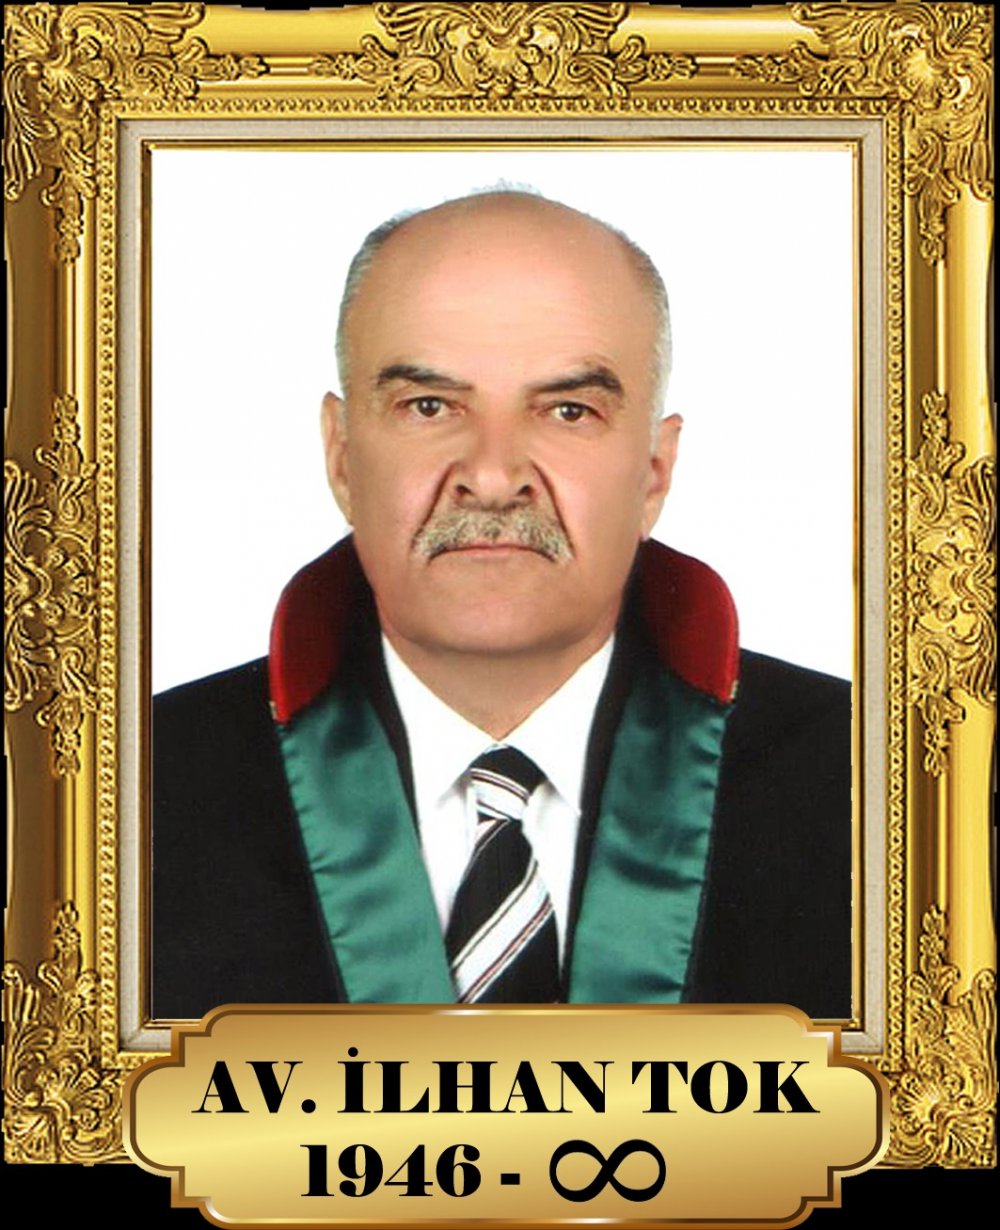 Avanoslu Avukat İlhan Tok vefat etti